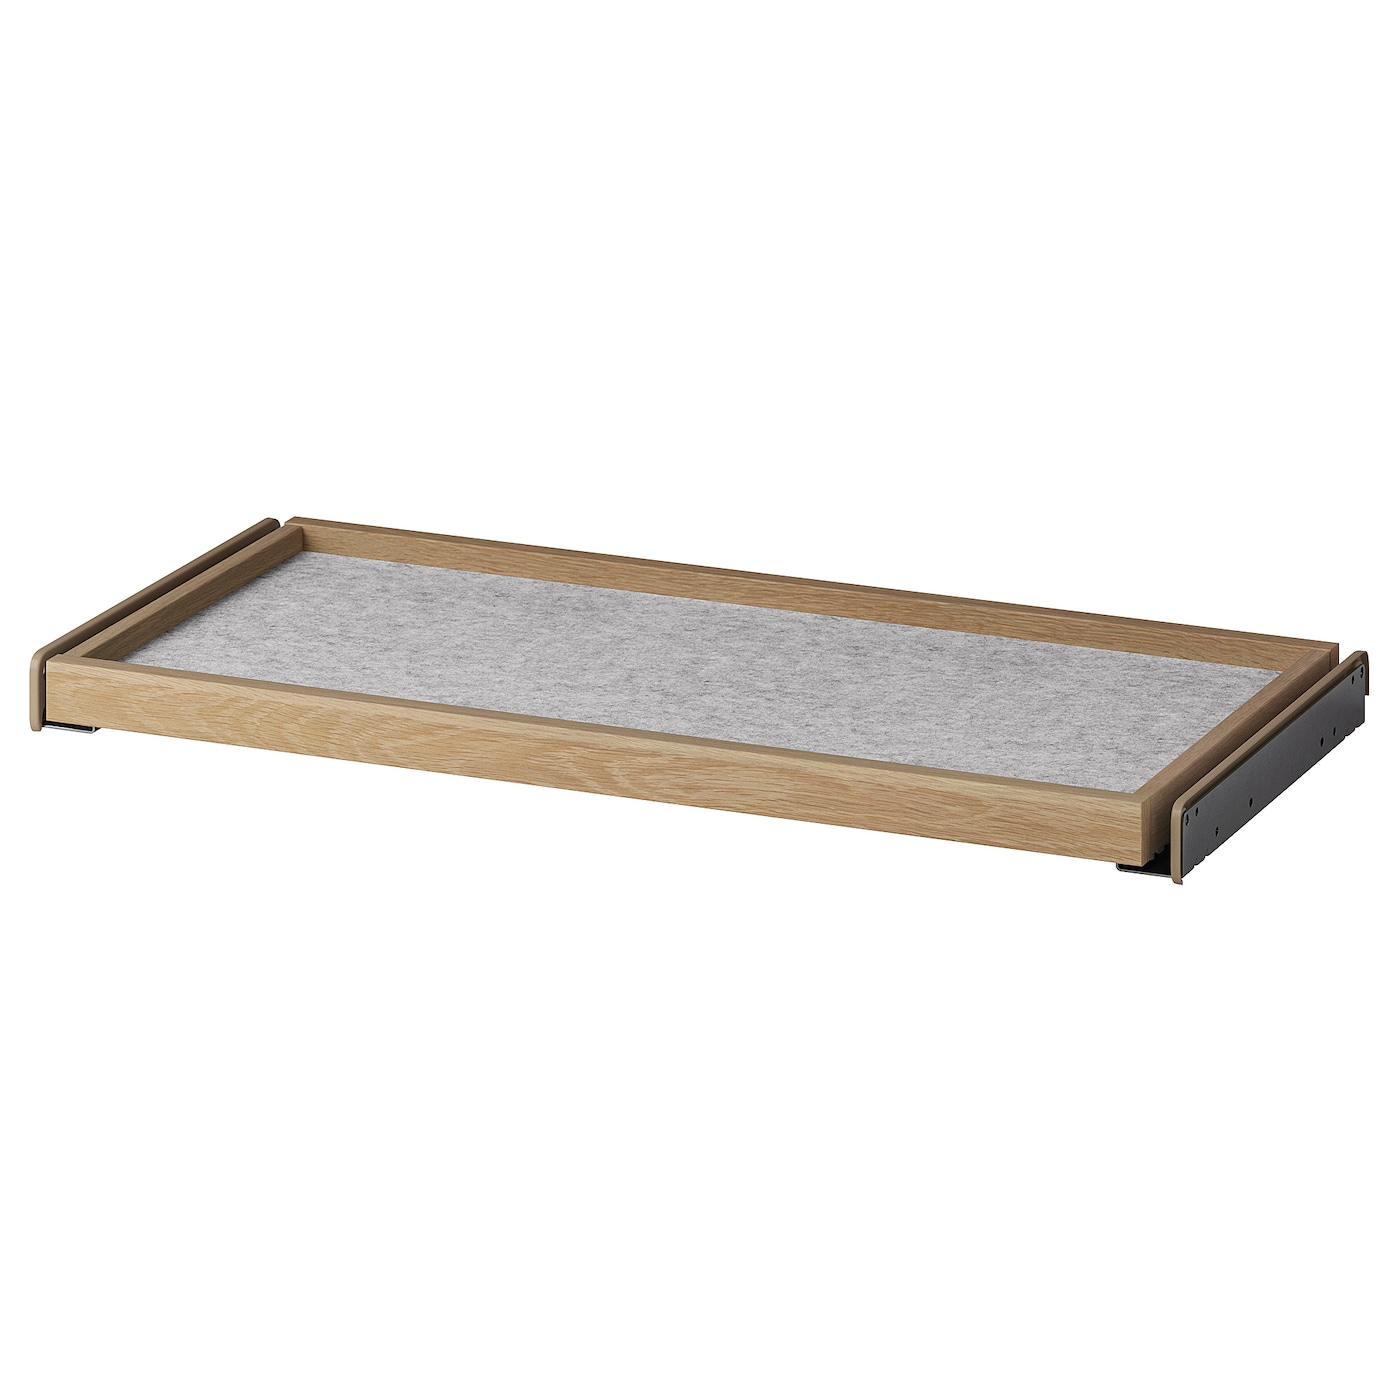 Выдвижной поддон с ковриком для ящика - IKEA KOMPLEMENT/КОМПЛЕМЕНТ ИКЕА, 35х75 см, серый/бежевый